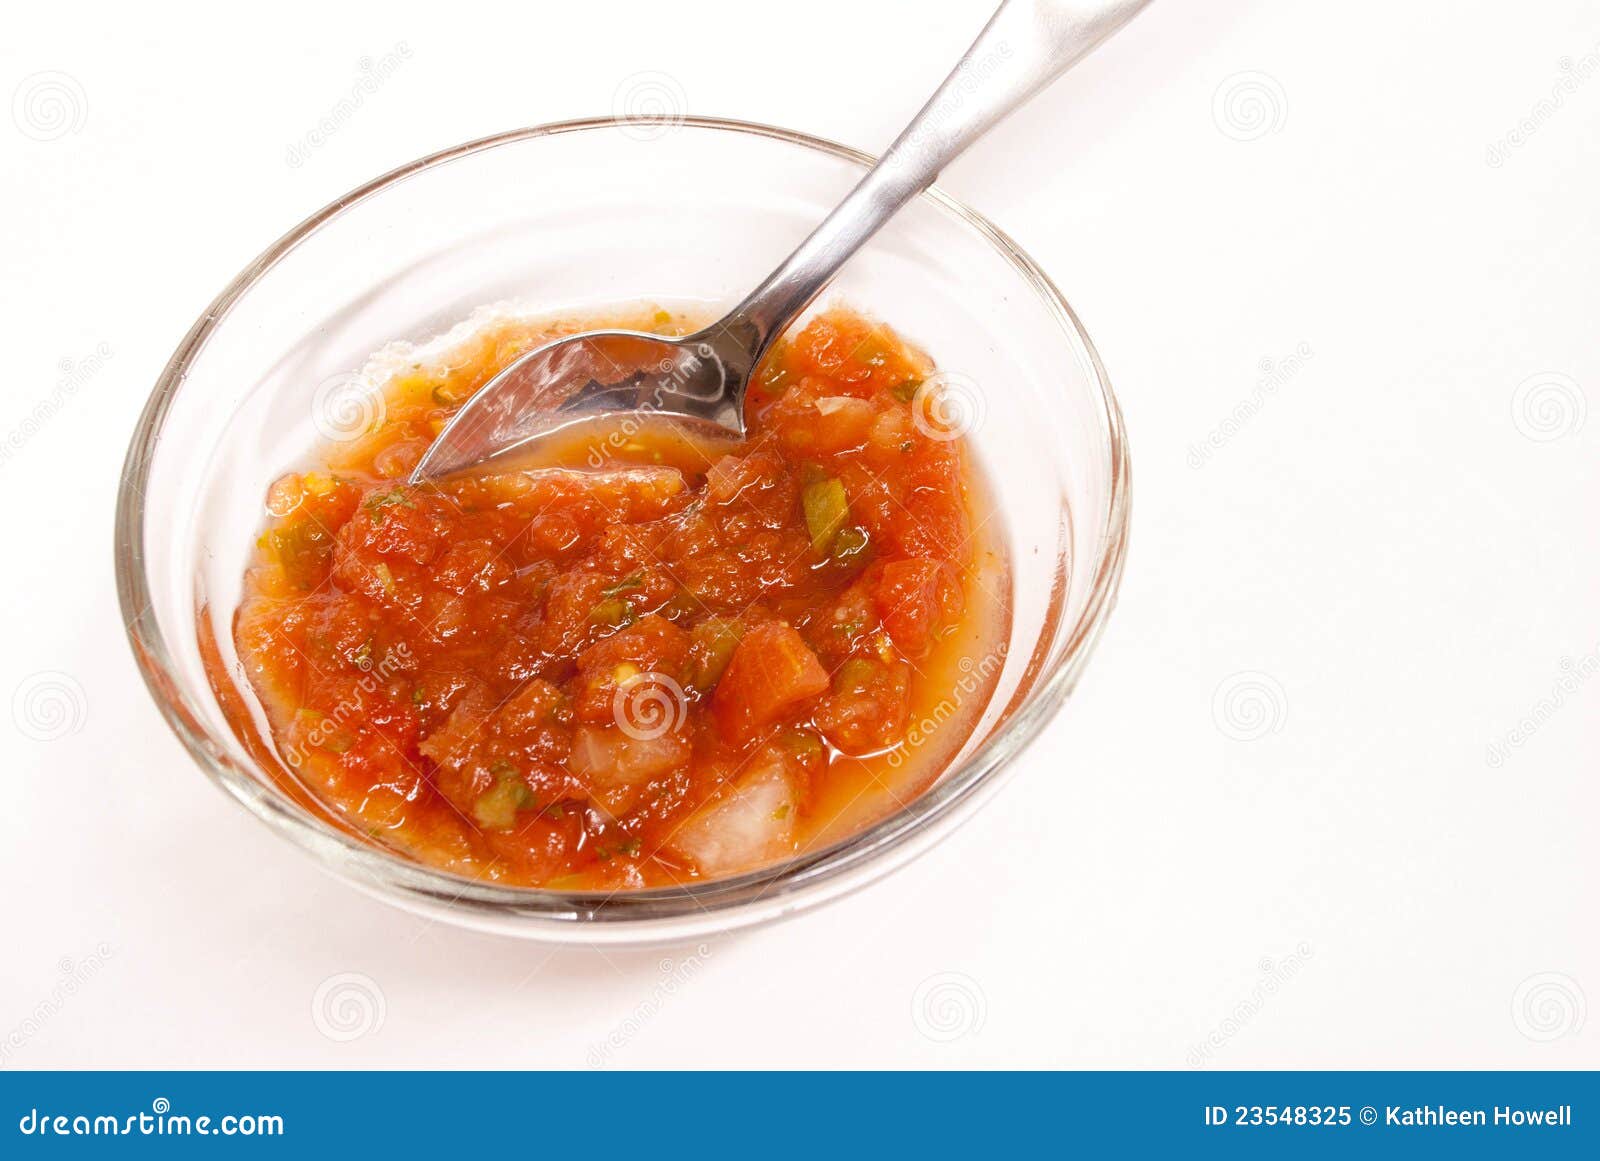 Bruschetta和tomatoe调味汁 库存照片. 图片 包括有 片式, 石油, 调味汁, 橄榄, 意大利面食 - 36604772